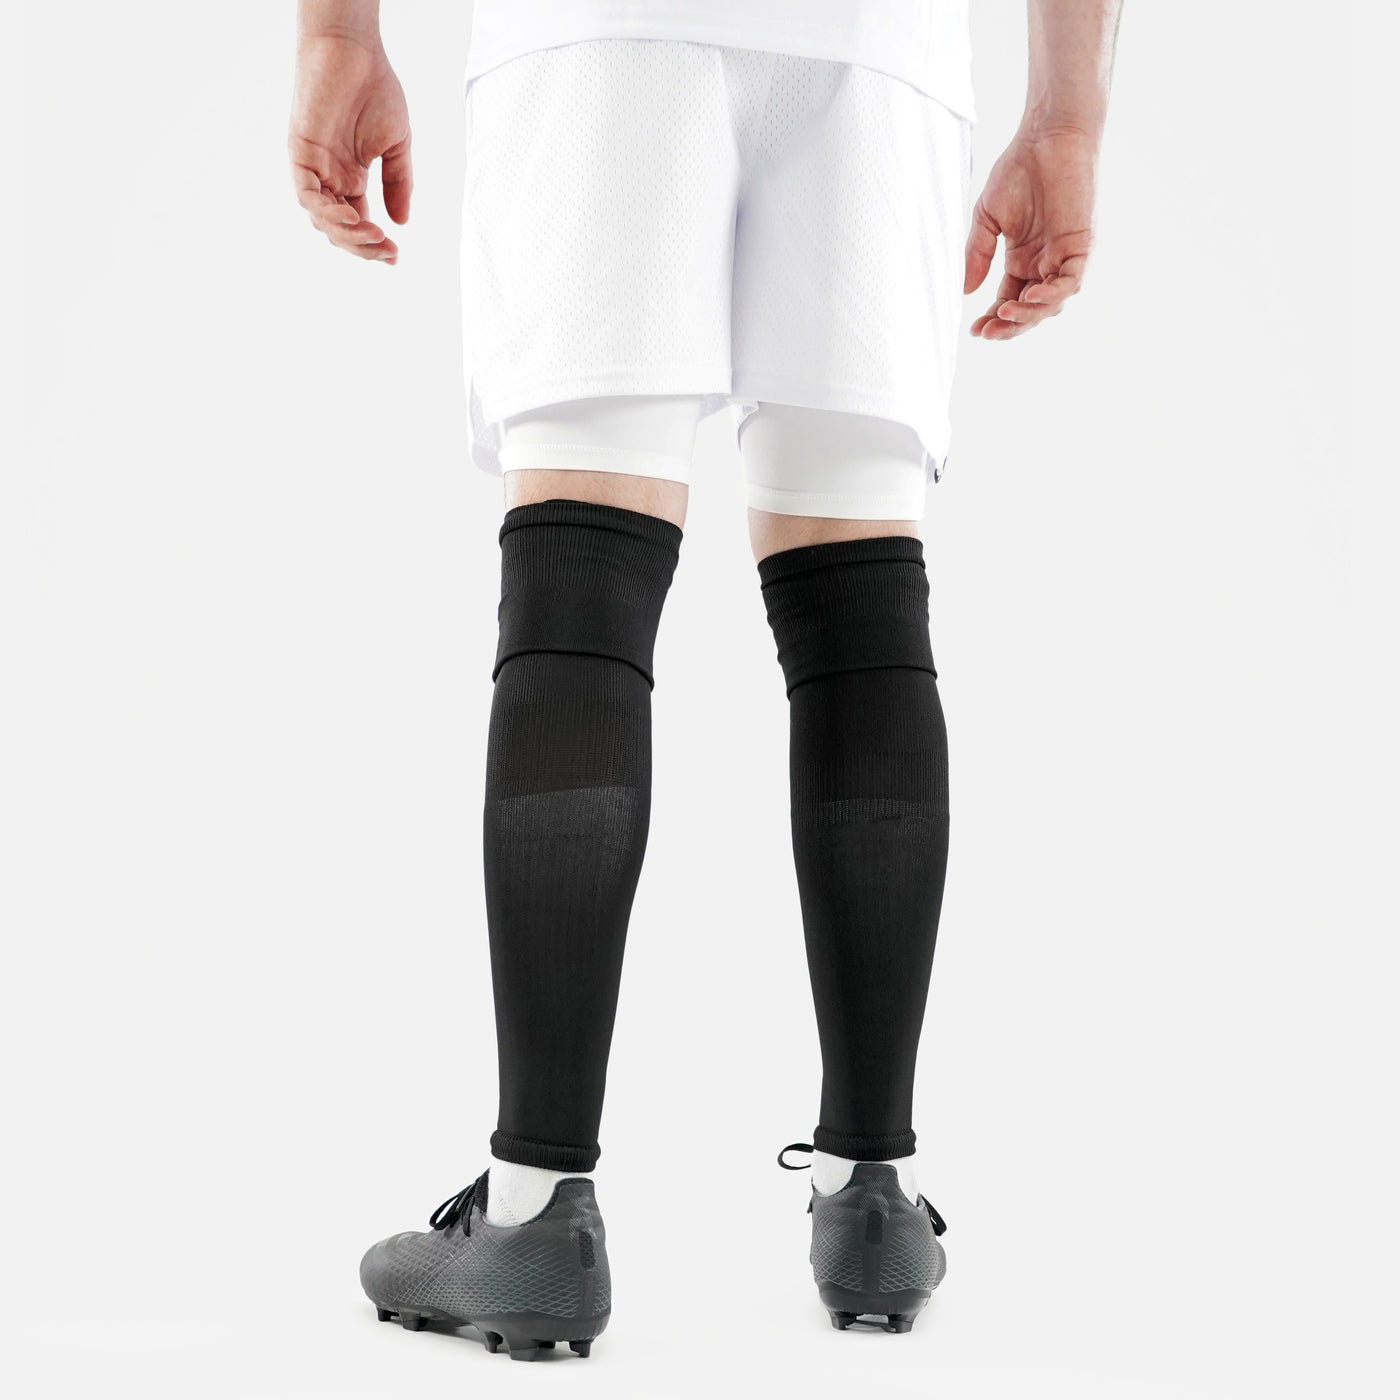 Basic Black Long Soccer Leg Sleeves